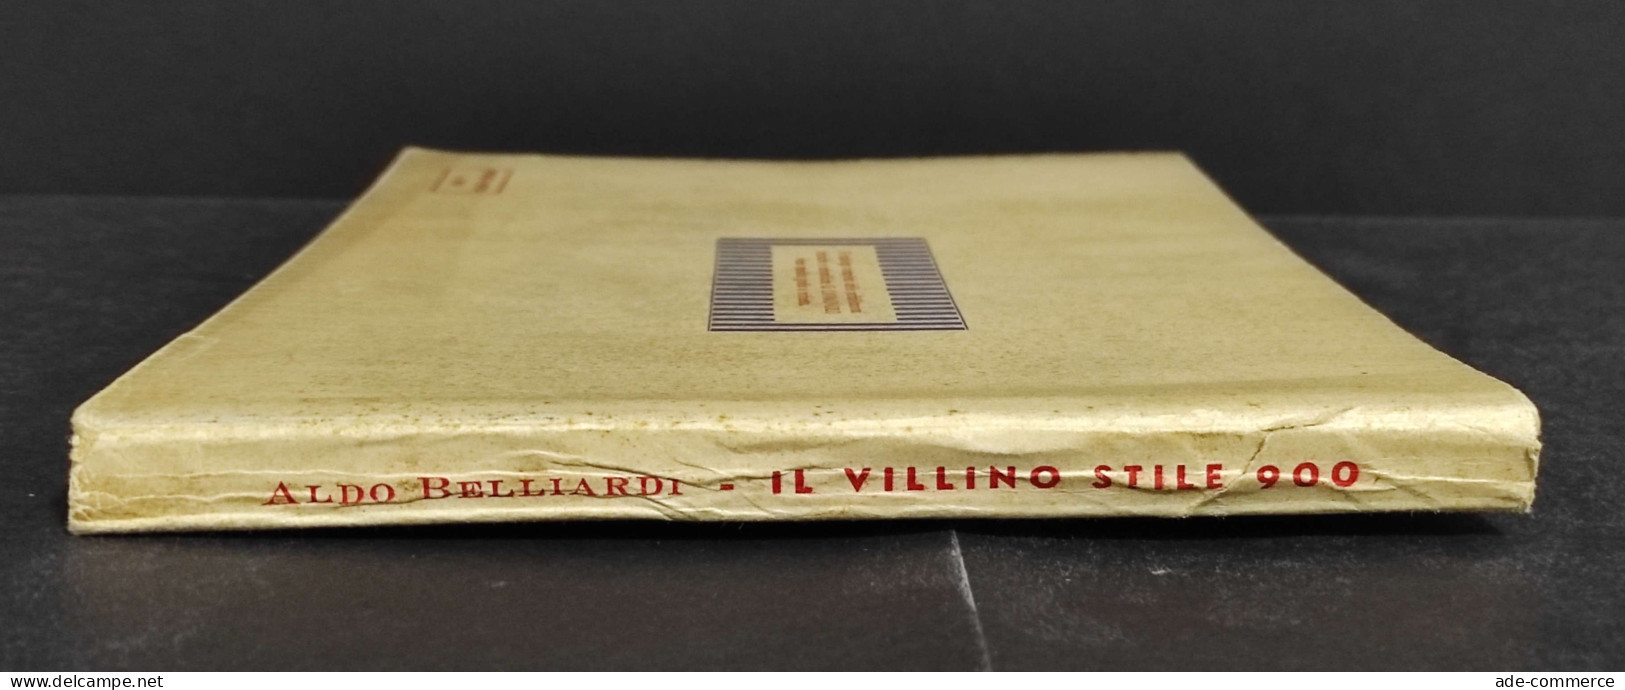 Il Villino Stile 900 - A. Belliardi - Ed. G. Lavagnolo - Raccolta Progetti - Kunst, Antiquitäten